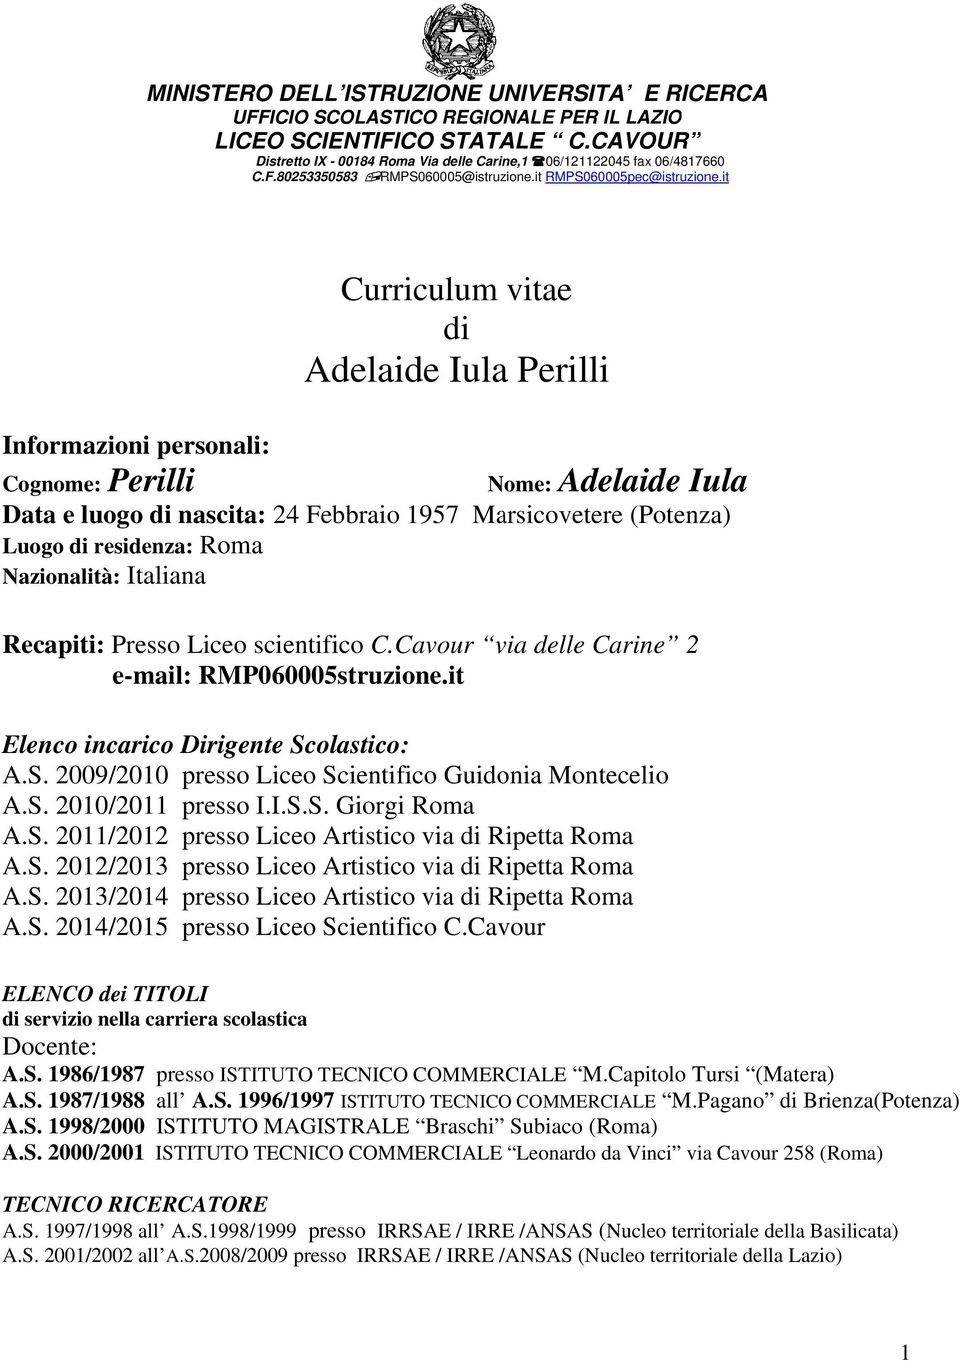 it Curriculum vitae di Adelaide Iula Perillii Informazioni personali: Cognome: Perilli Nome: Adelaide Iu Data e luogo di nascita: 24 Febbraio 1957 Marsicovetere (Potenza) Luogo di residenza: Roma